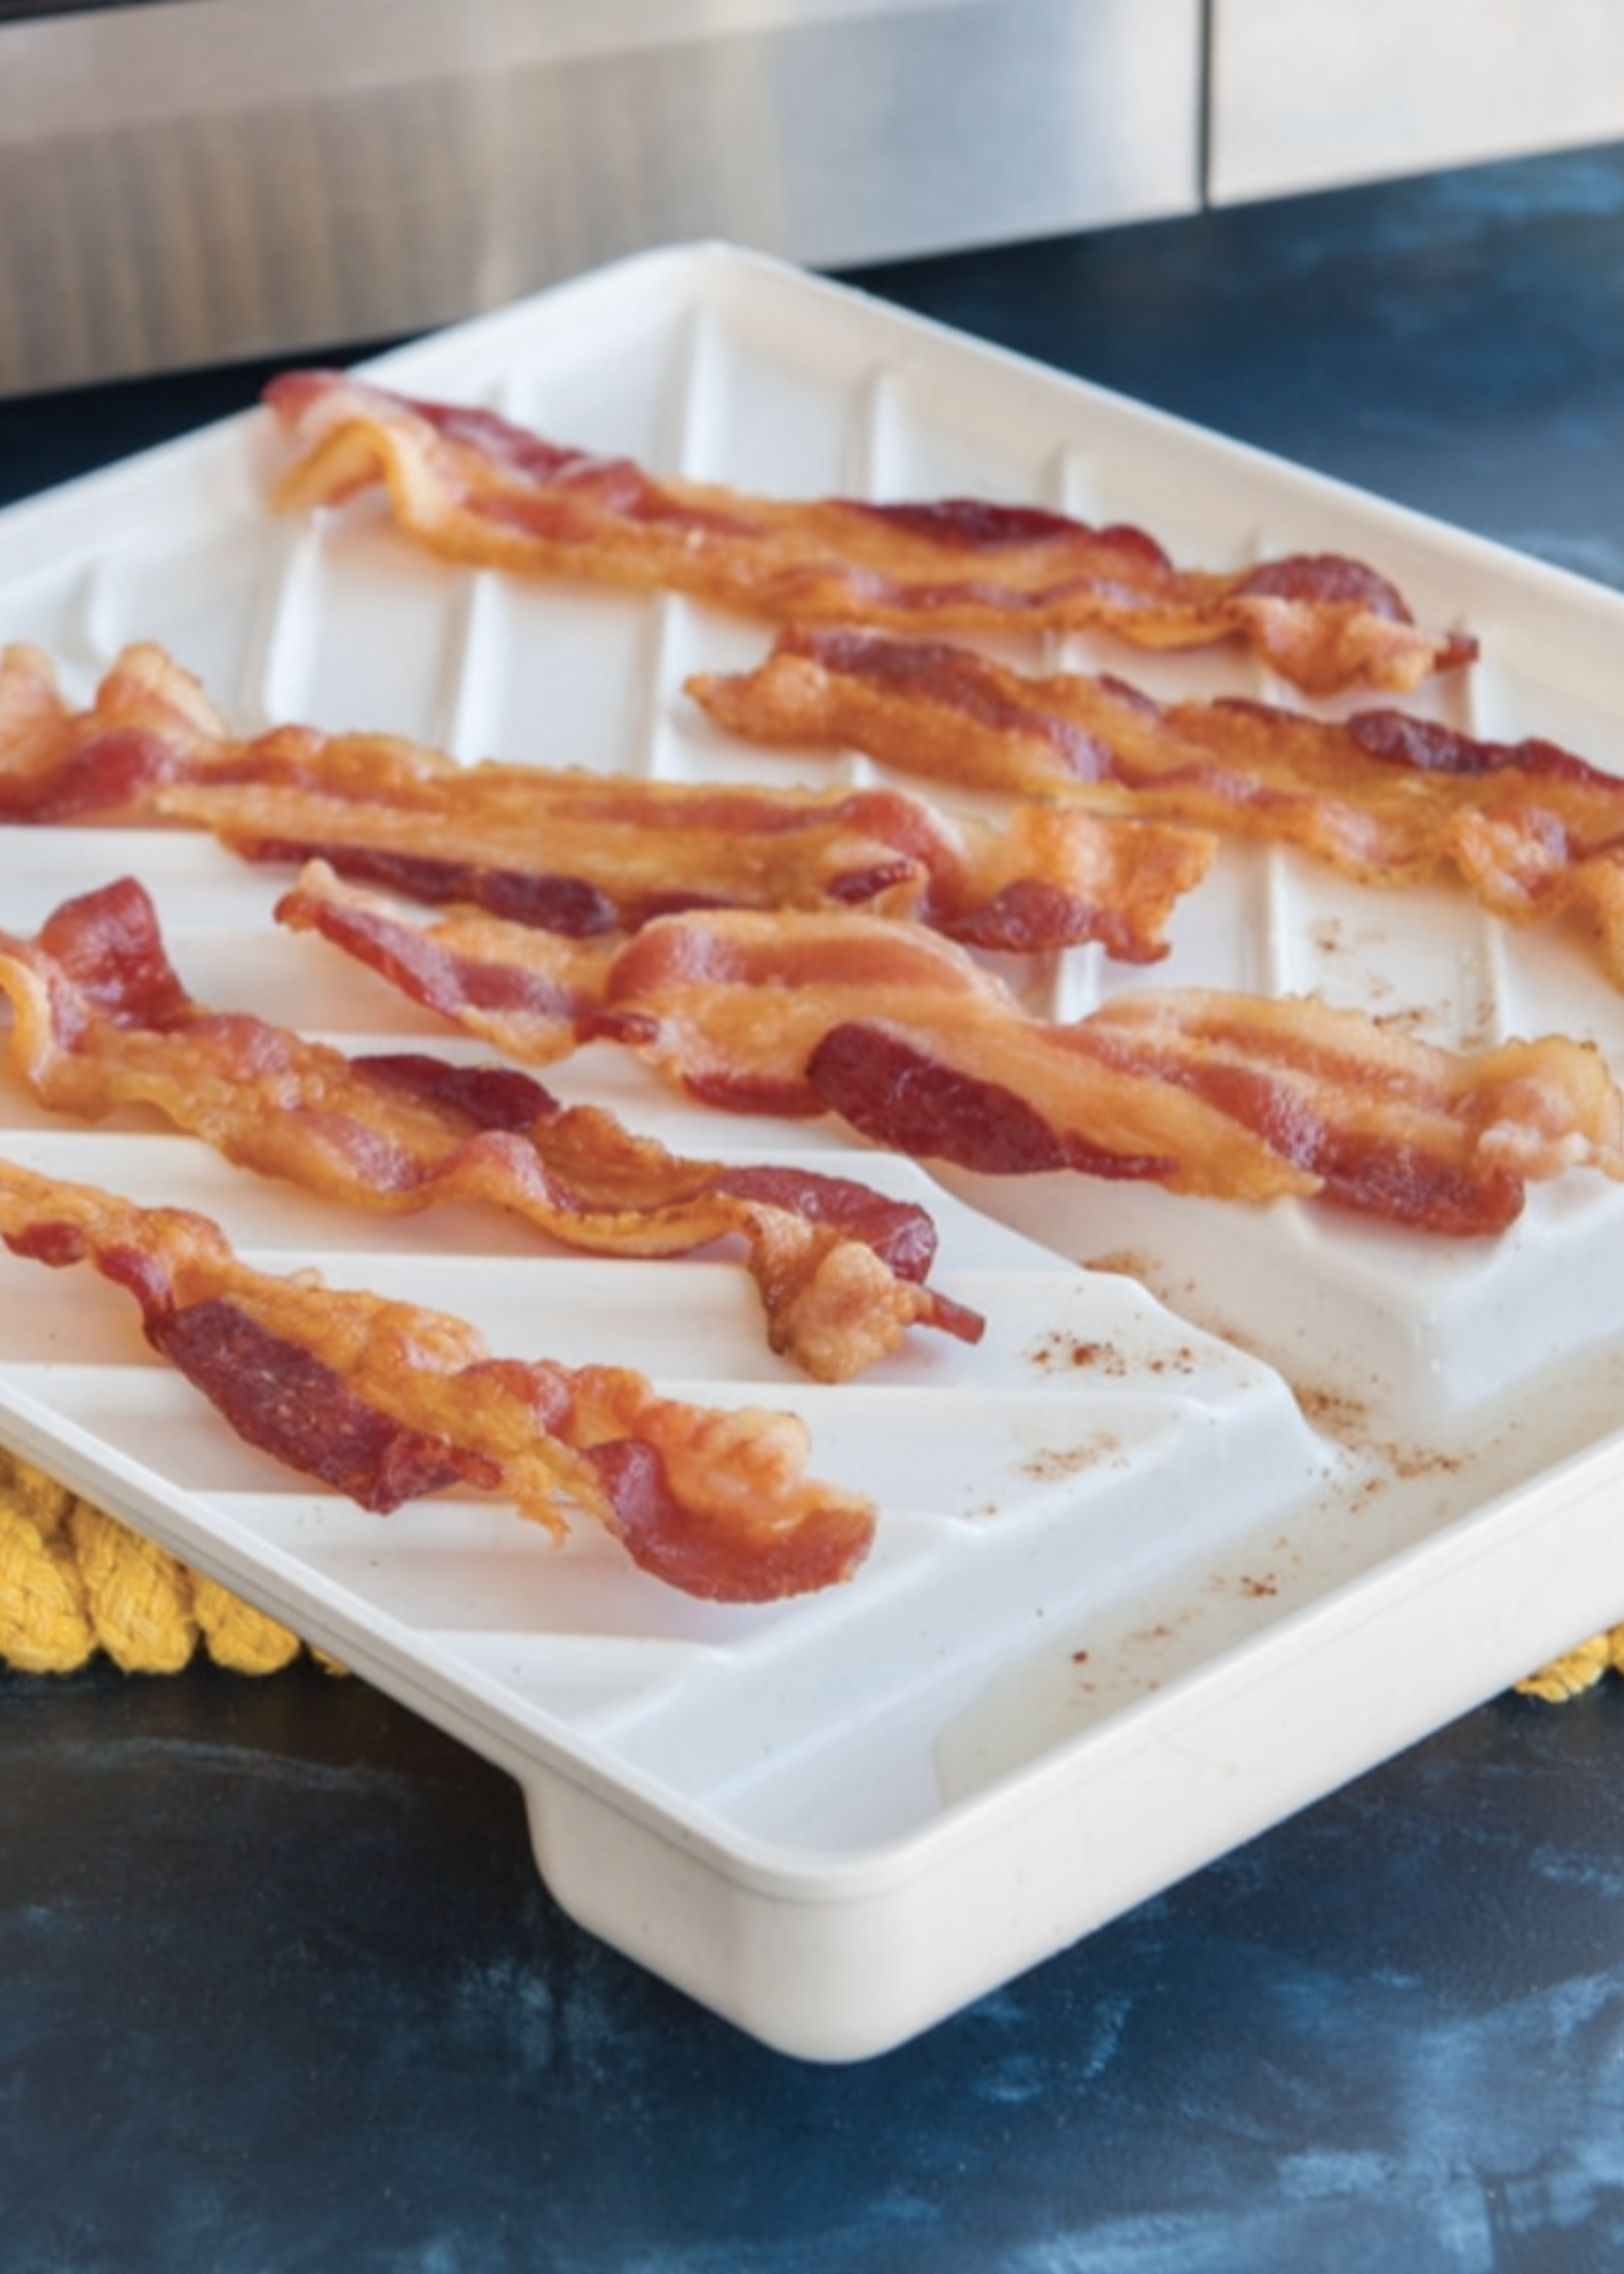 Nordic Ware Slanted Bacon Tray LG